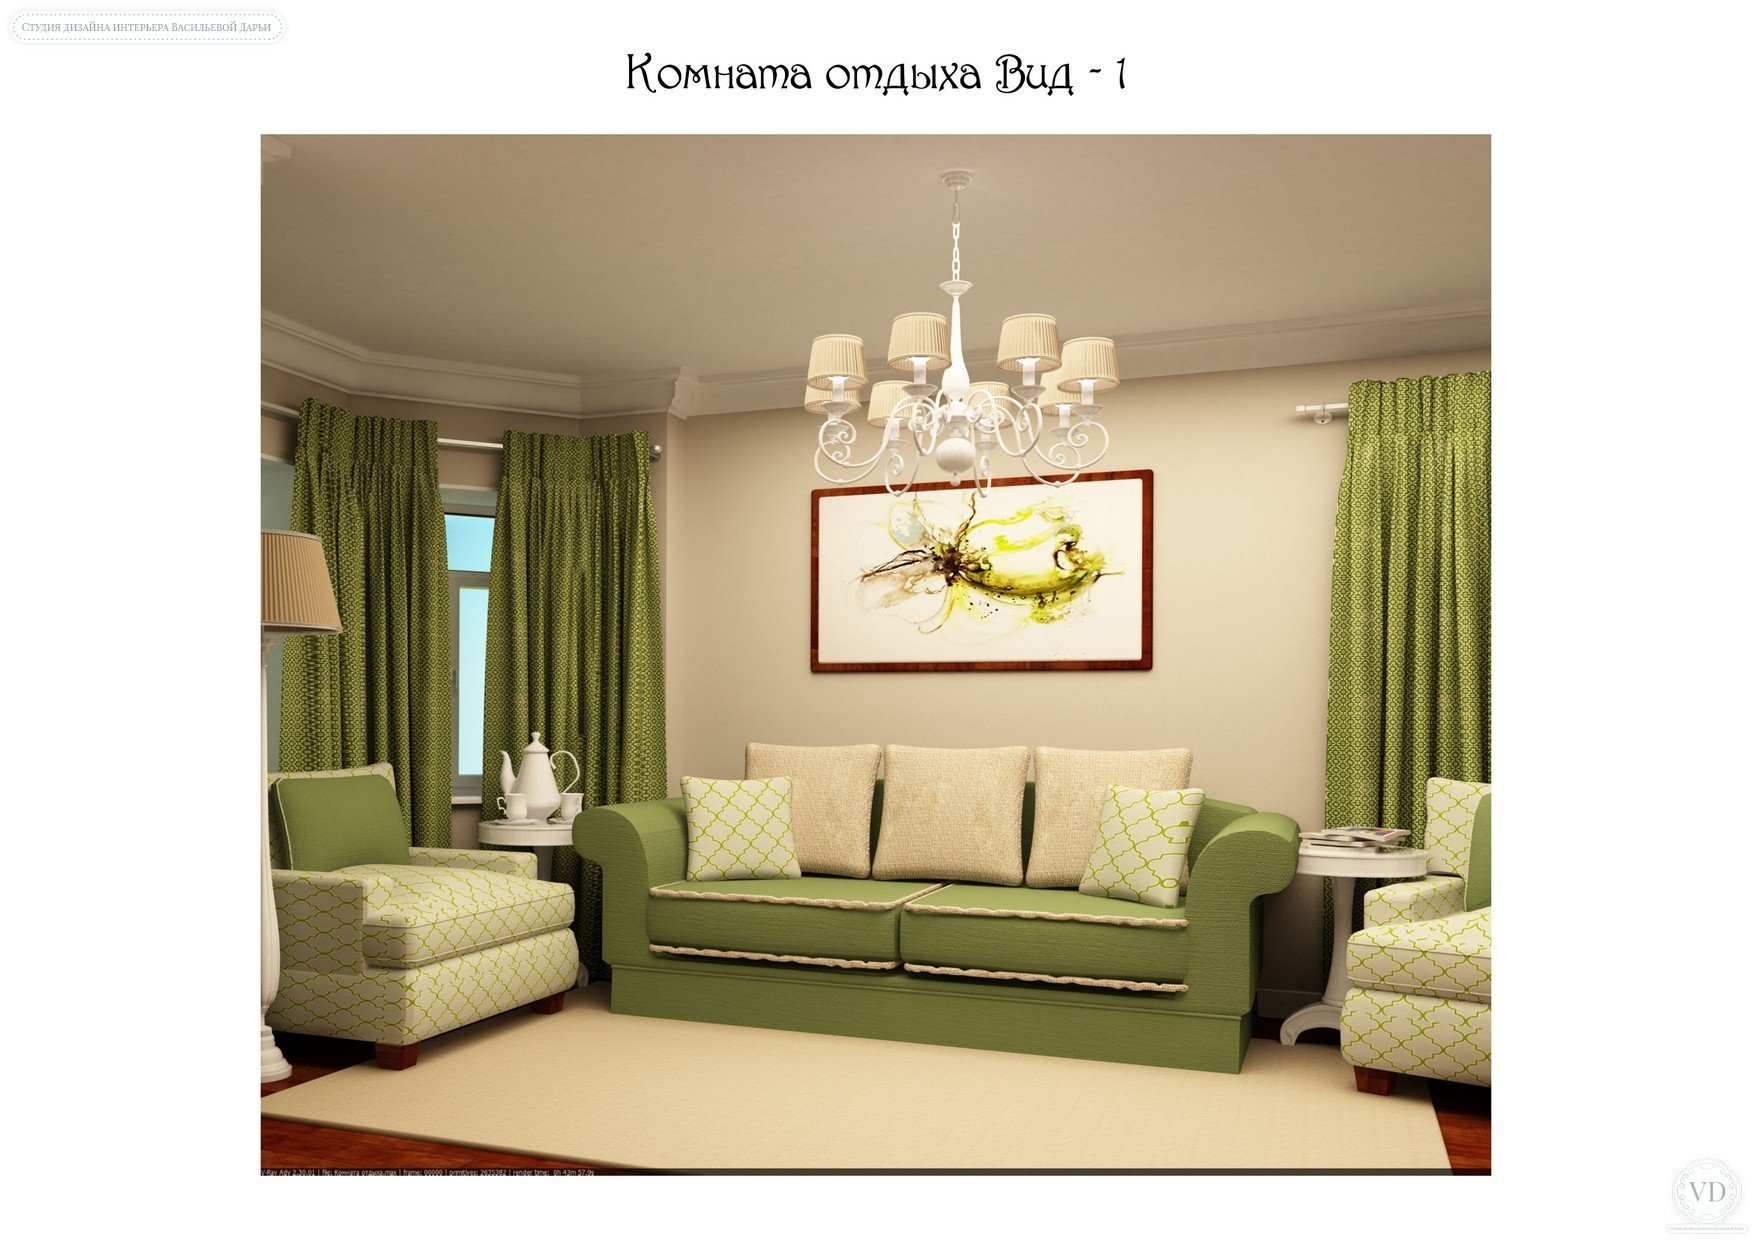 Дизайн квартиры с зеленым диваном